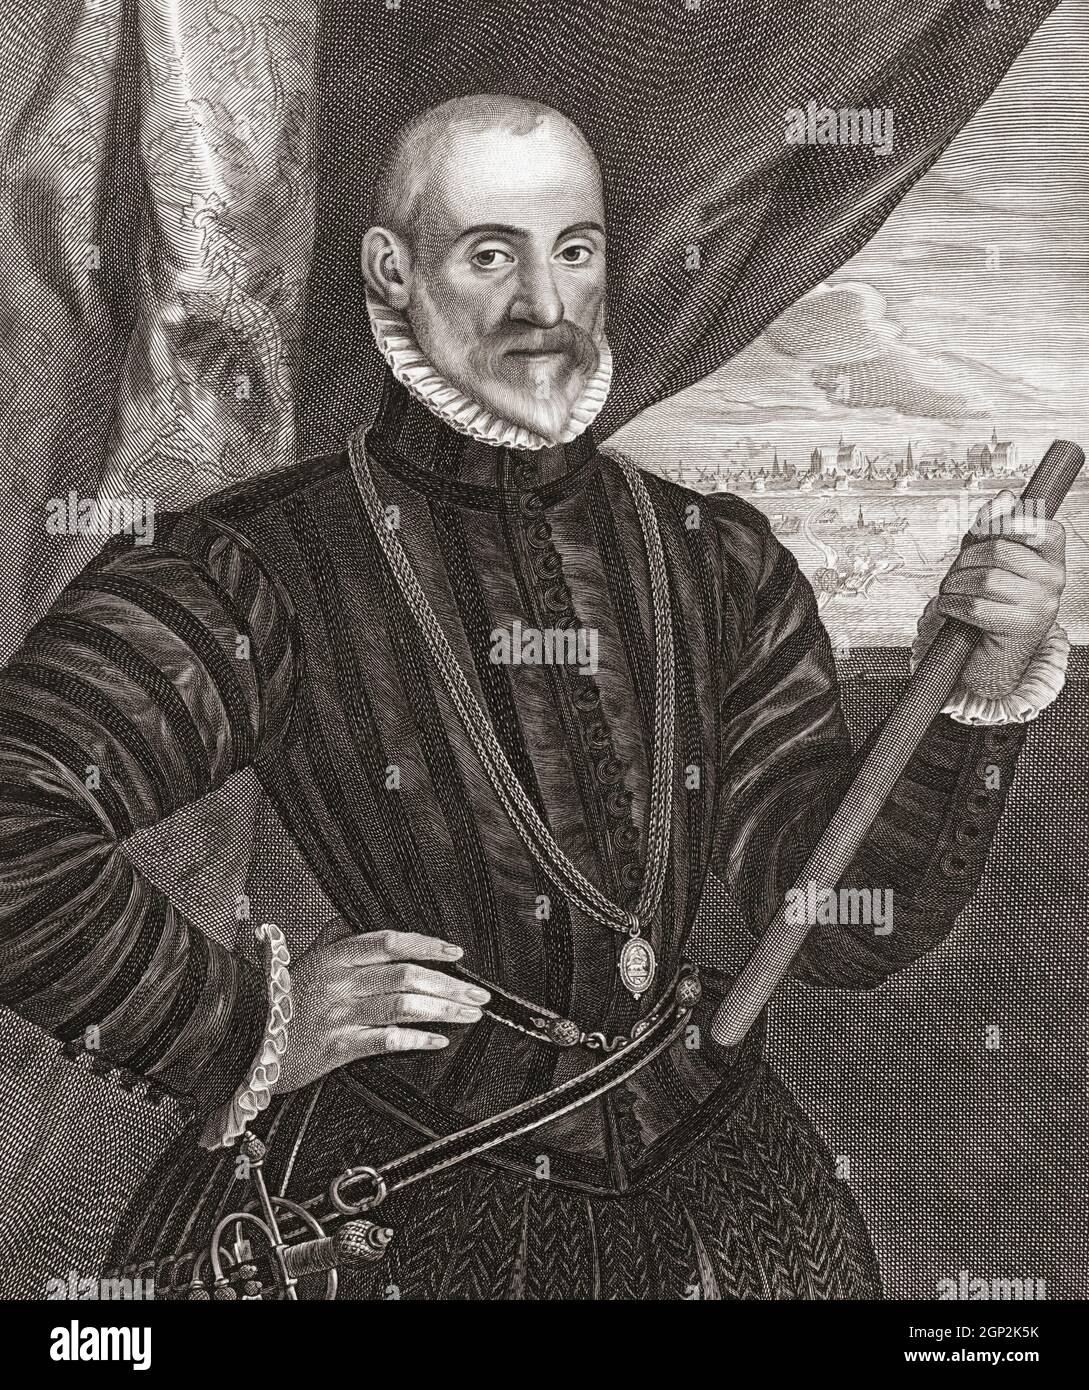 Francisco de Valdez, c. 1522? – c. 1580?. Spanischer General während des Achtzigjährigen Krieges. Nach einem Werk von Cornelis Visscher aus dem 17. Jahrhundert. Stockfoto